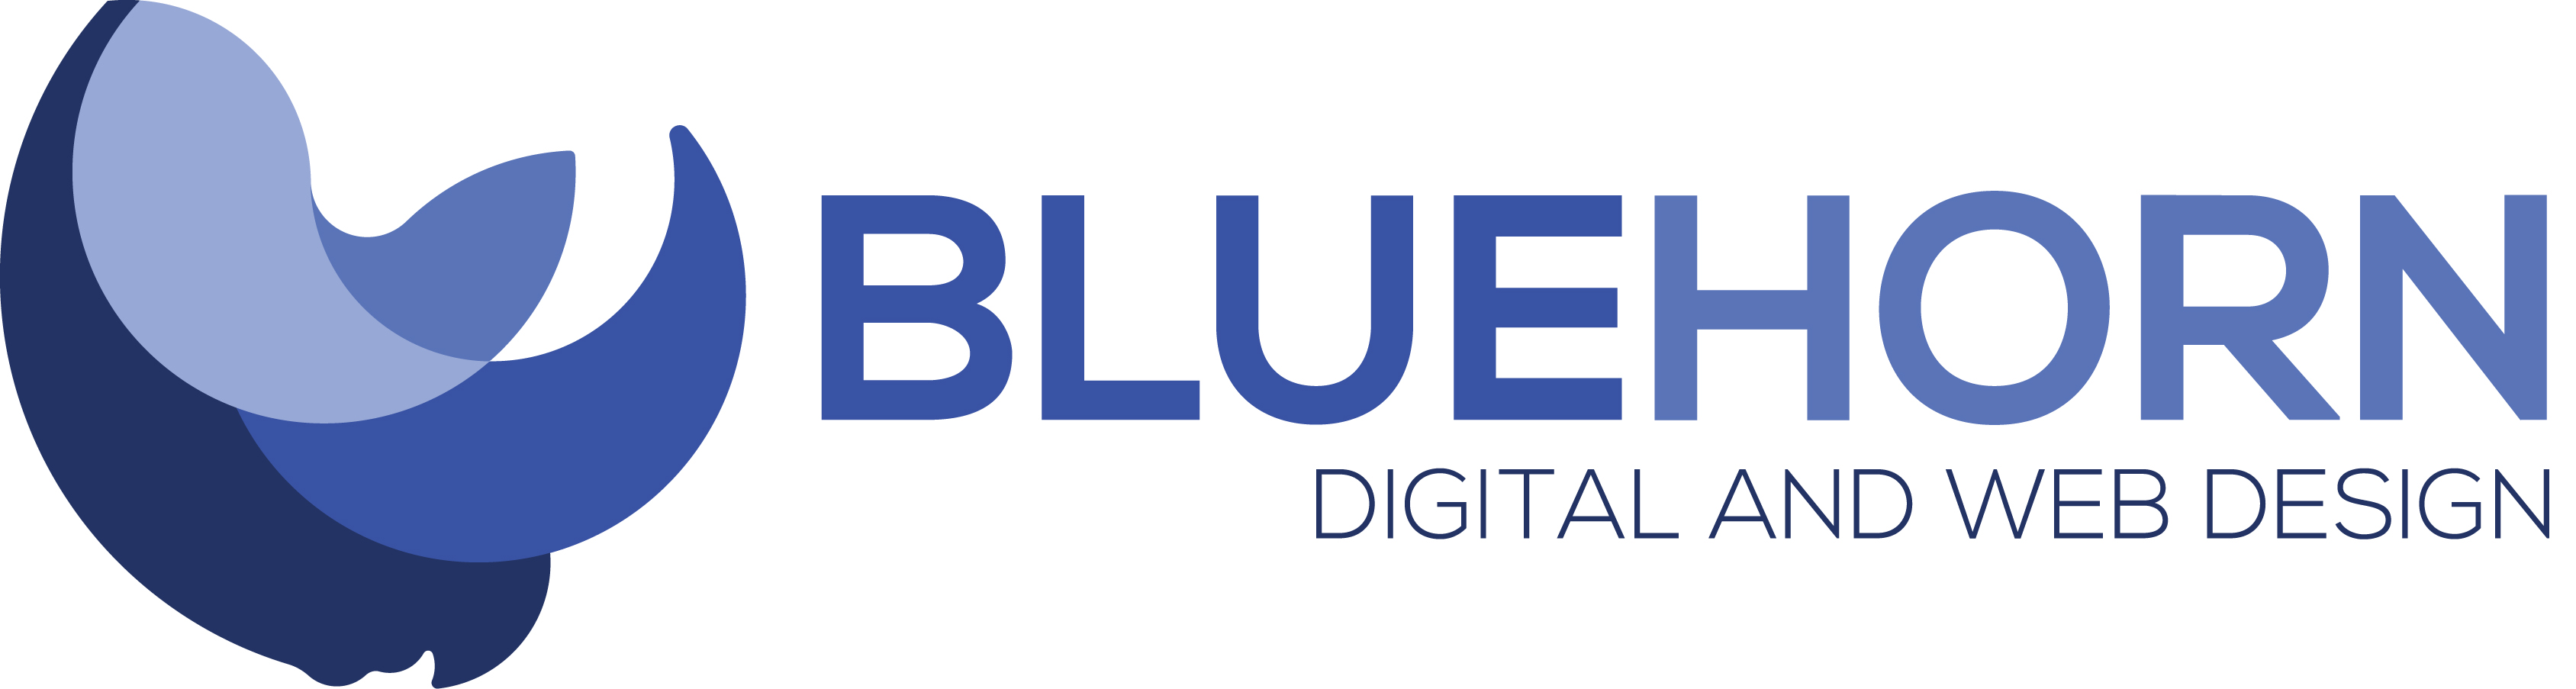 bluehorn logo